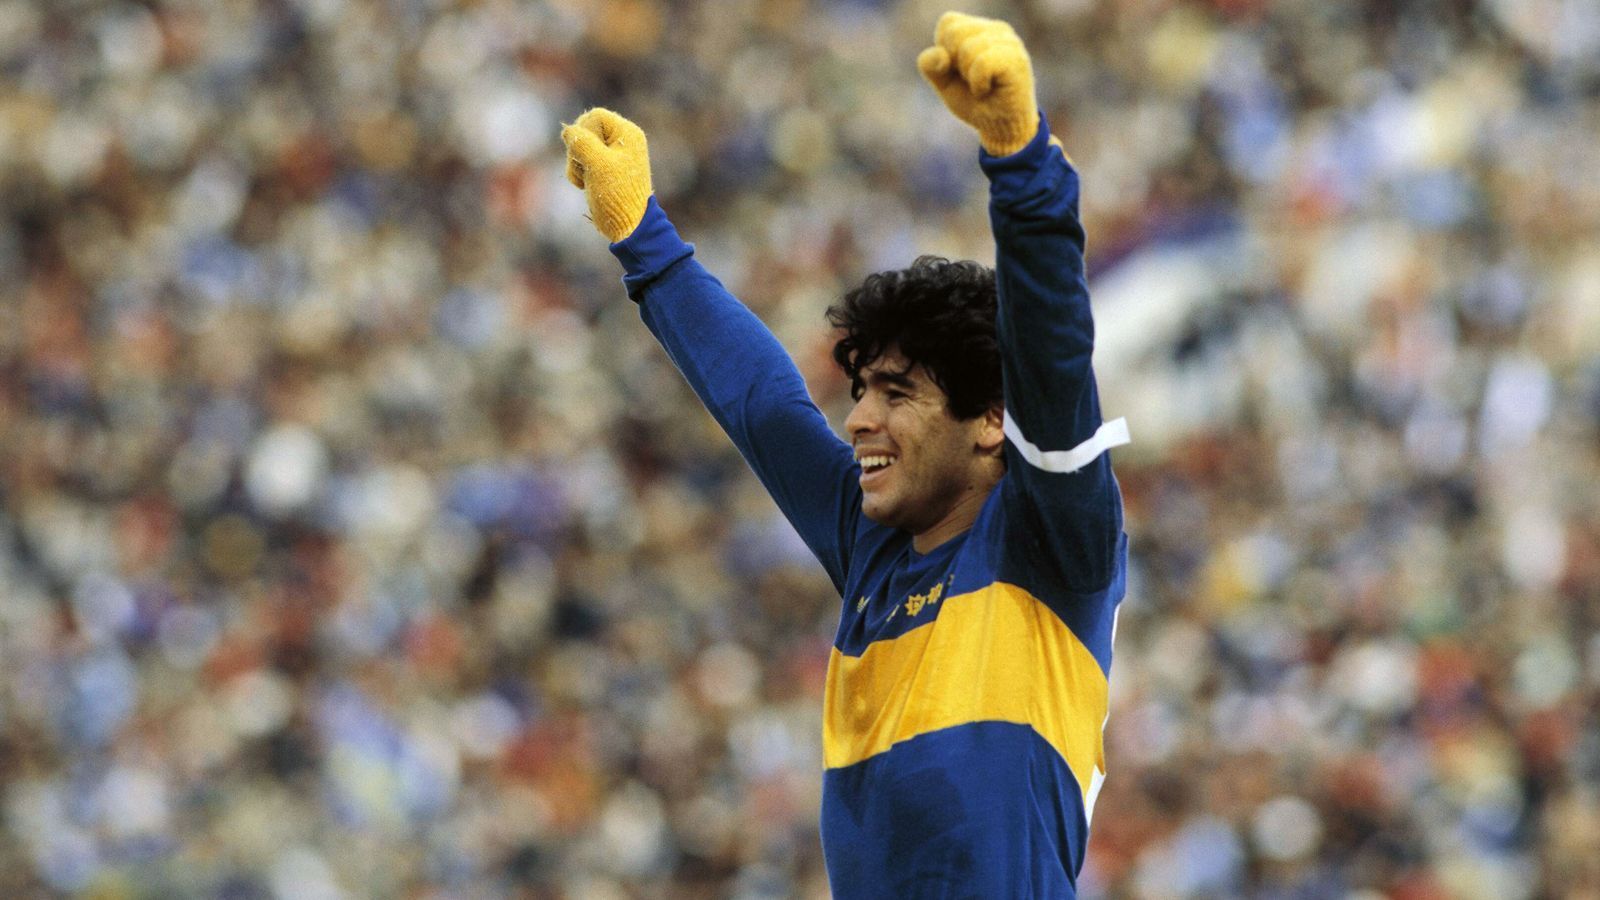 
                <strong>1981: Diego Maradona</strong><br>
                &#x2022; Ablösesumme: 3,8 Millionen Euro (Leihgebühr)<br>&#x2022; Aufnehmender Verein: Boca Juniors <br>&#x2022; Abgebender Verein: Argentinos Juniors<br>
              